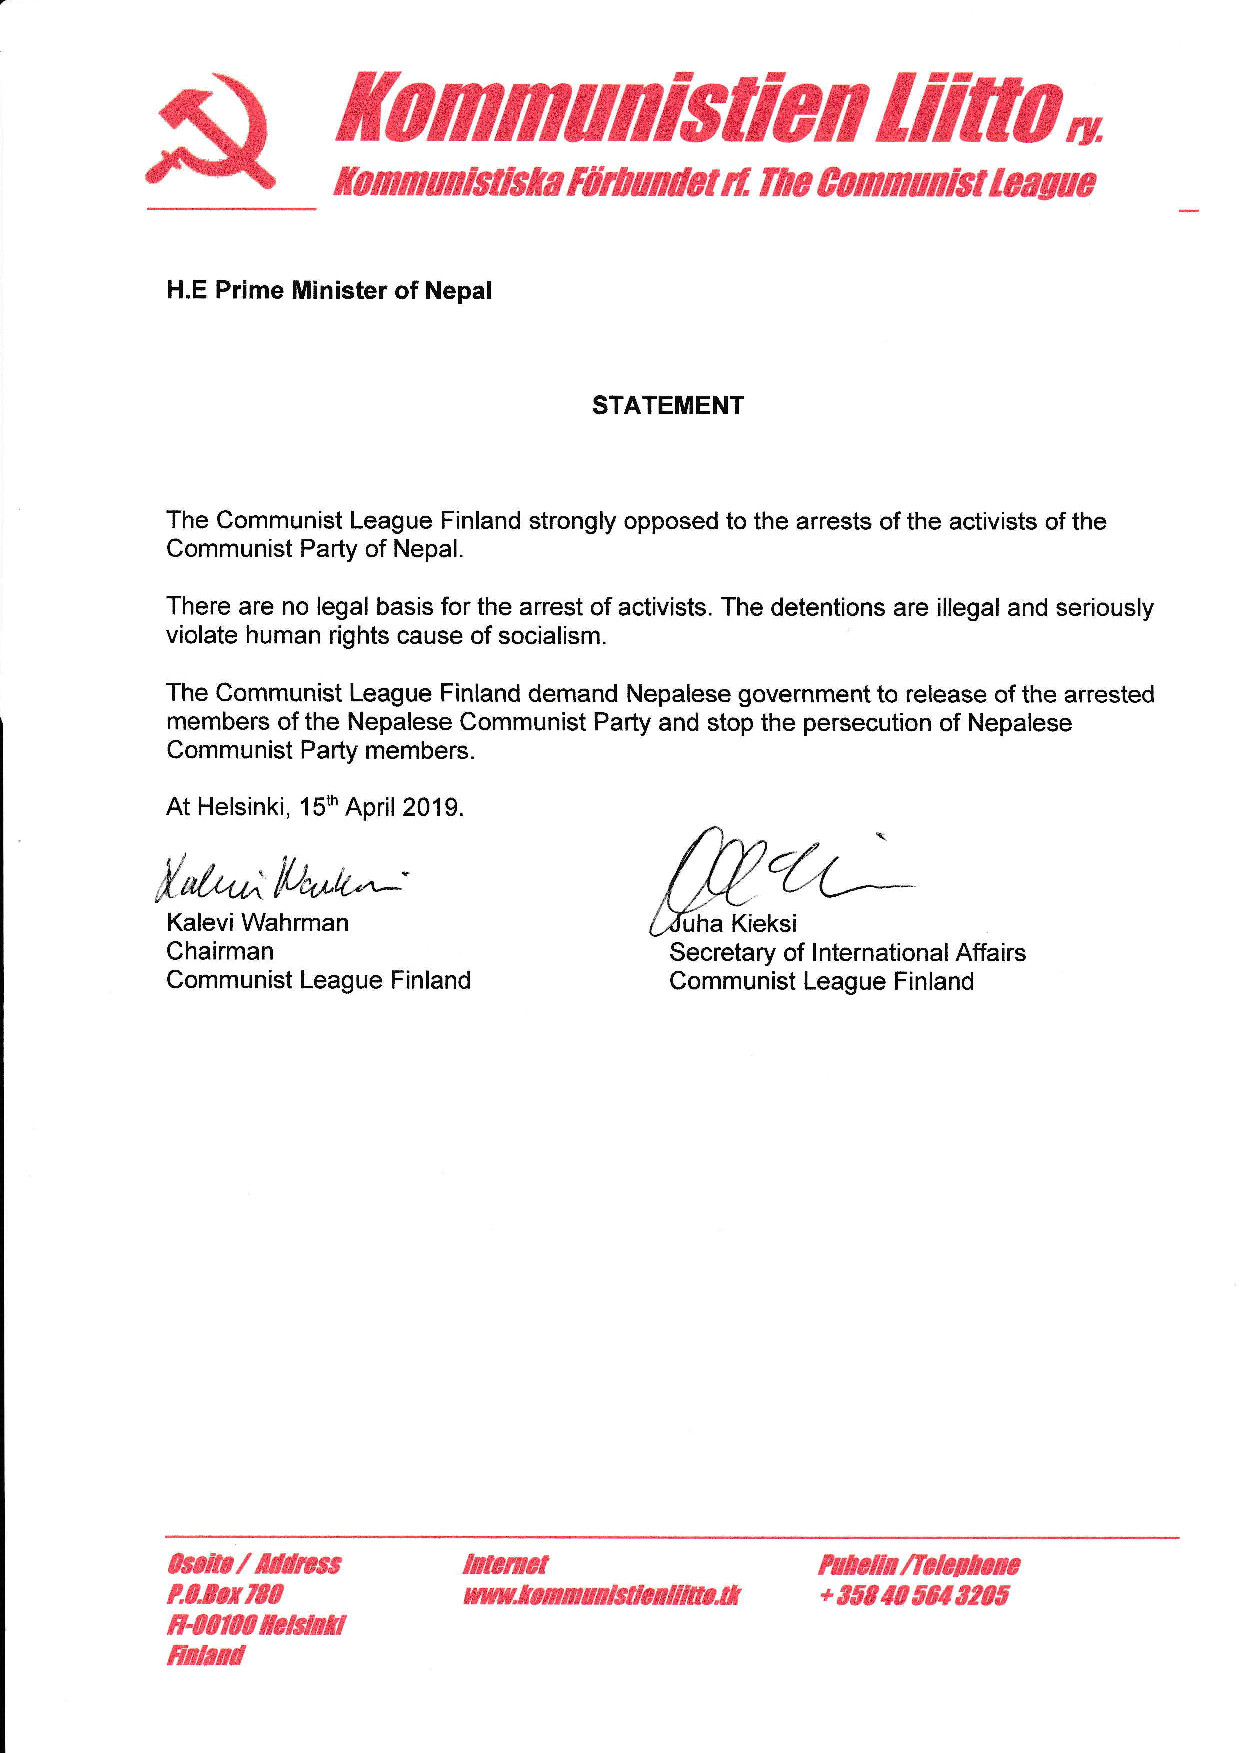 नेकपाका नेताहरुलाई पक्राउबारे फिनल्यान्डको कम्युनिस्ट पार्टीद्वारा प्रधानमन्त्रीलाई पत्र